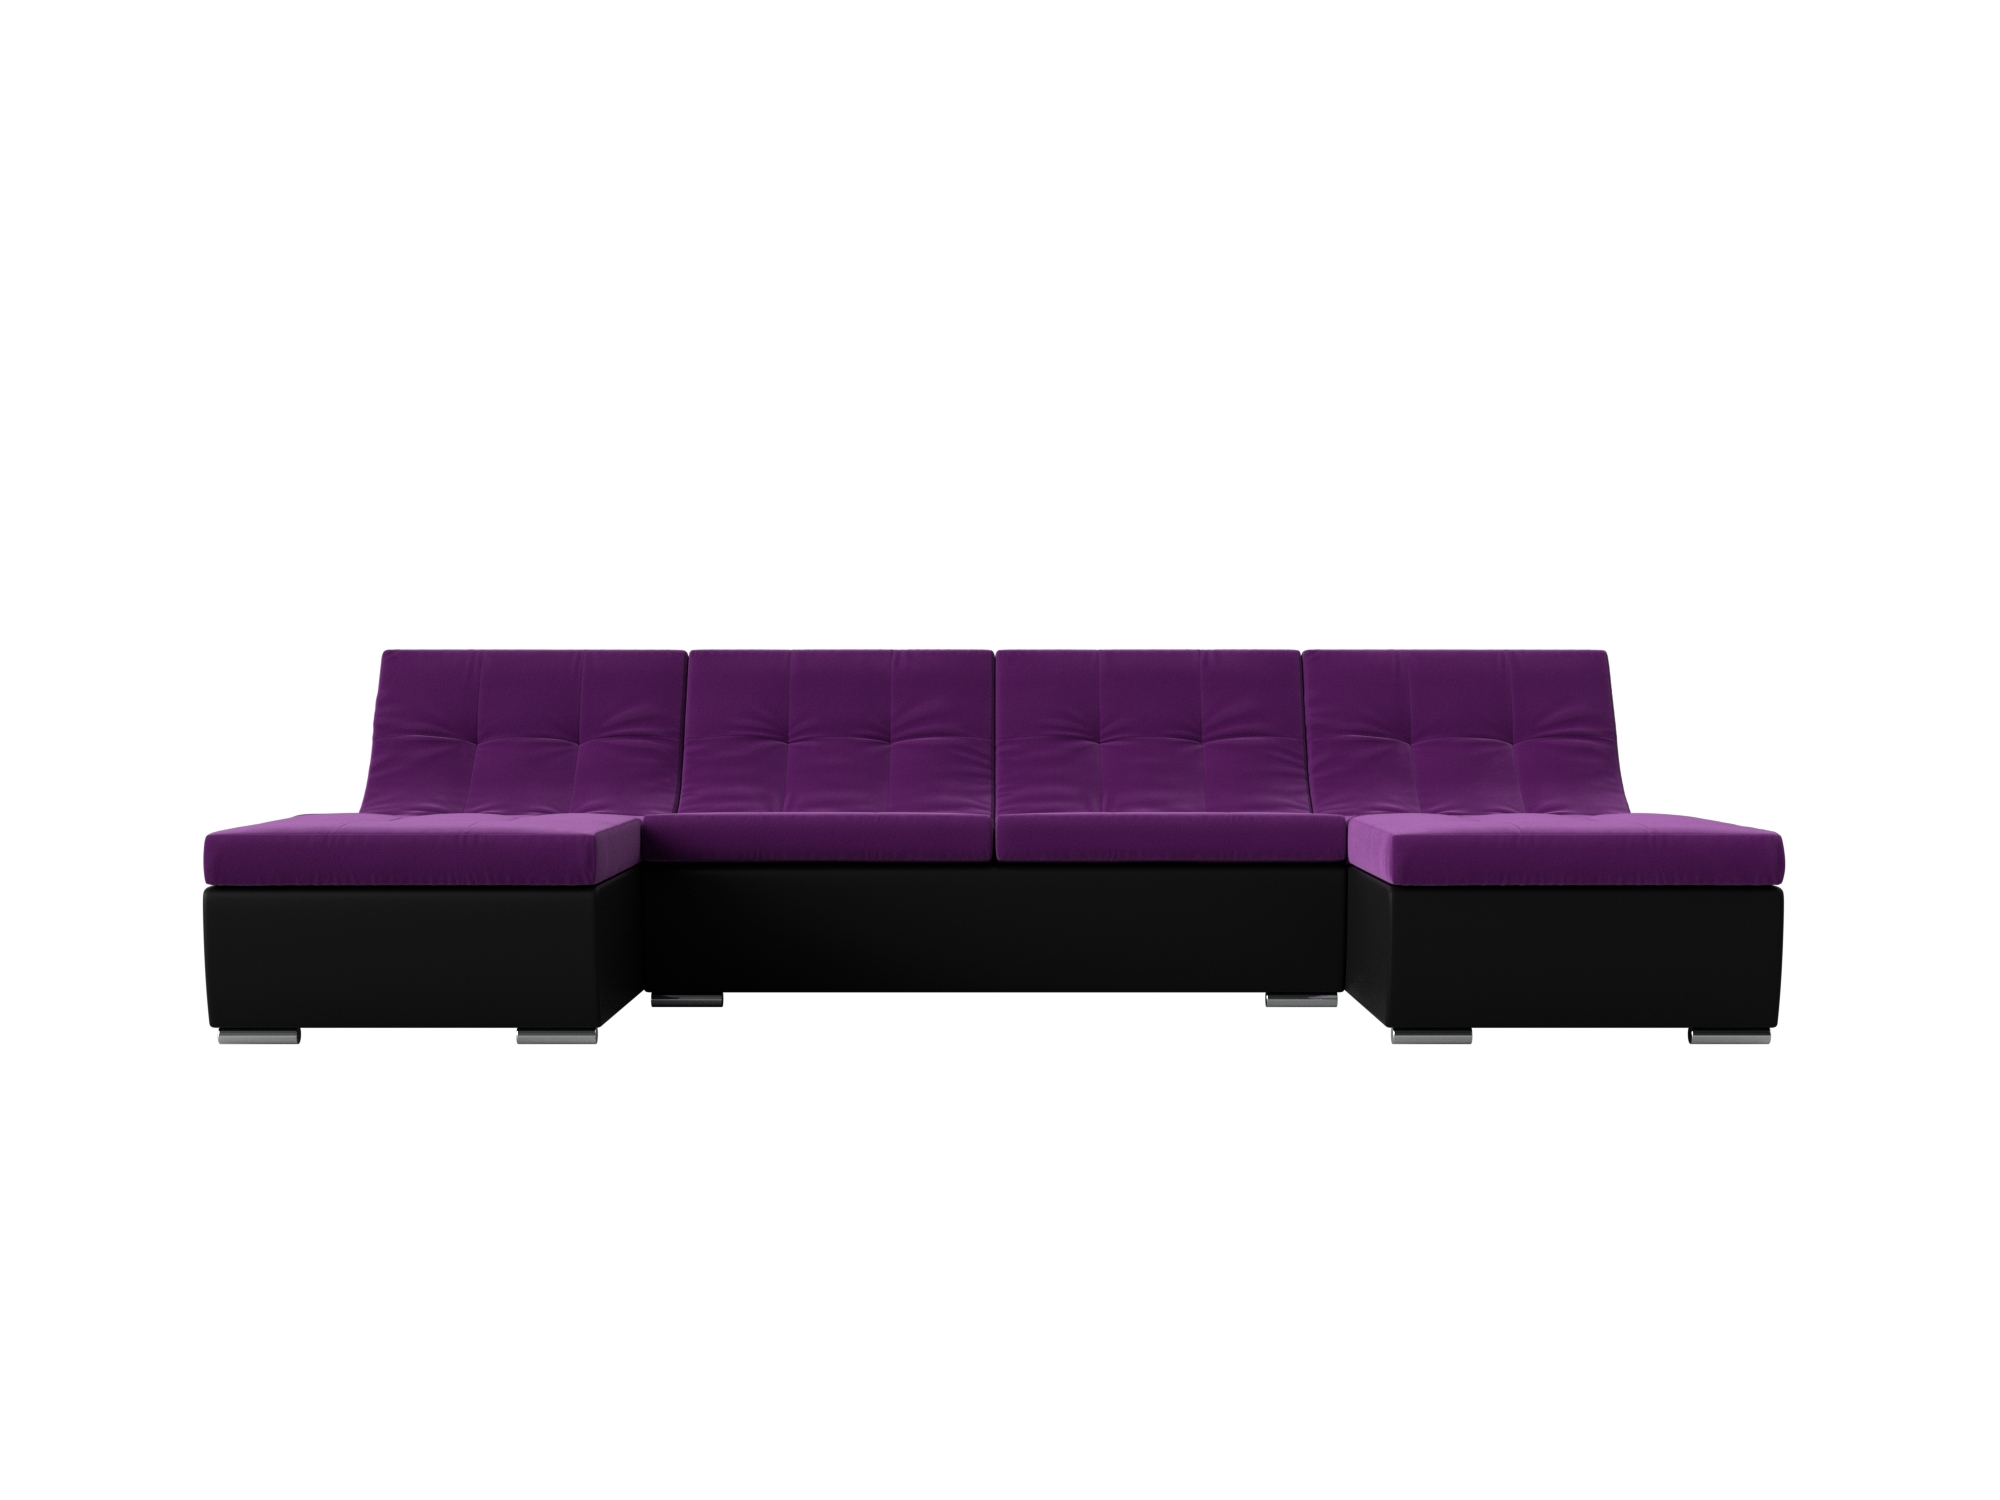 П-образный модульный диван Монреаль MebelVia Фиолетовый, Черный, Микровельвет, Экокожа, ЛДСП диван п образный клайд п mebelvia фиолетовый микровельвет лдсп